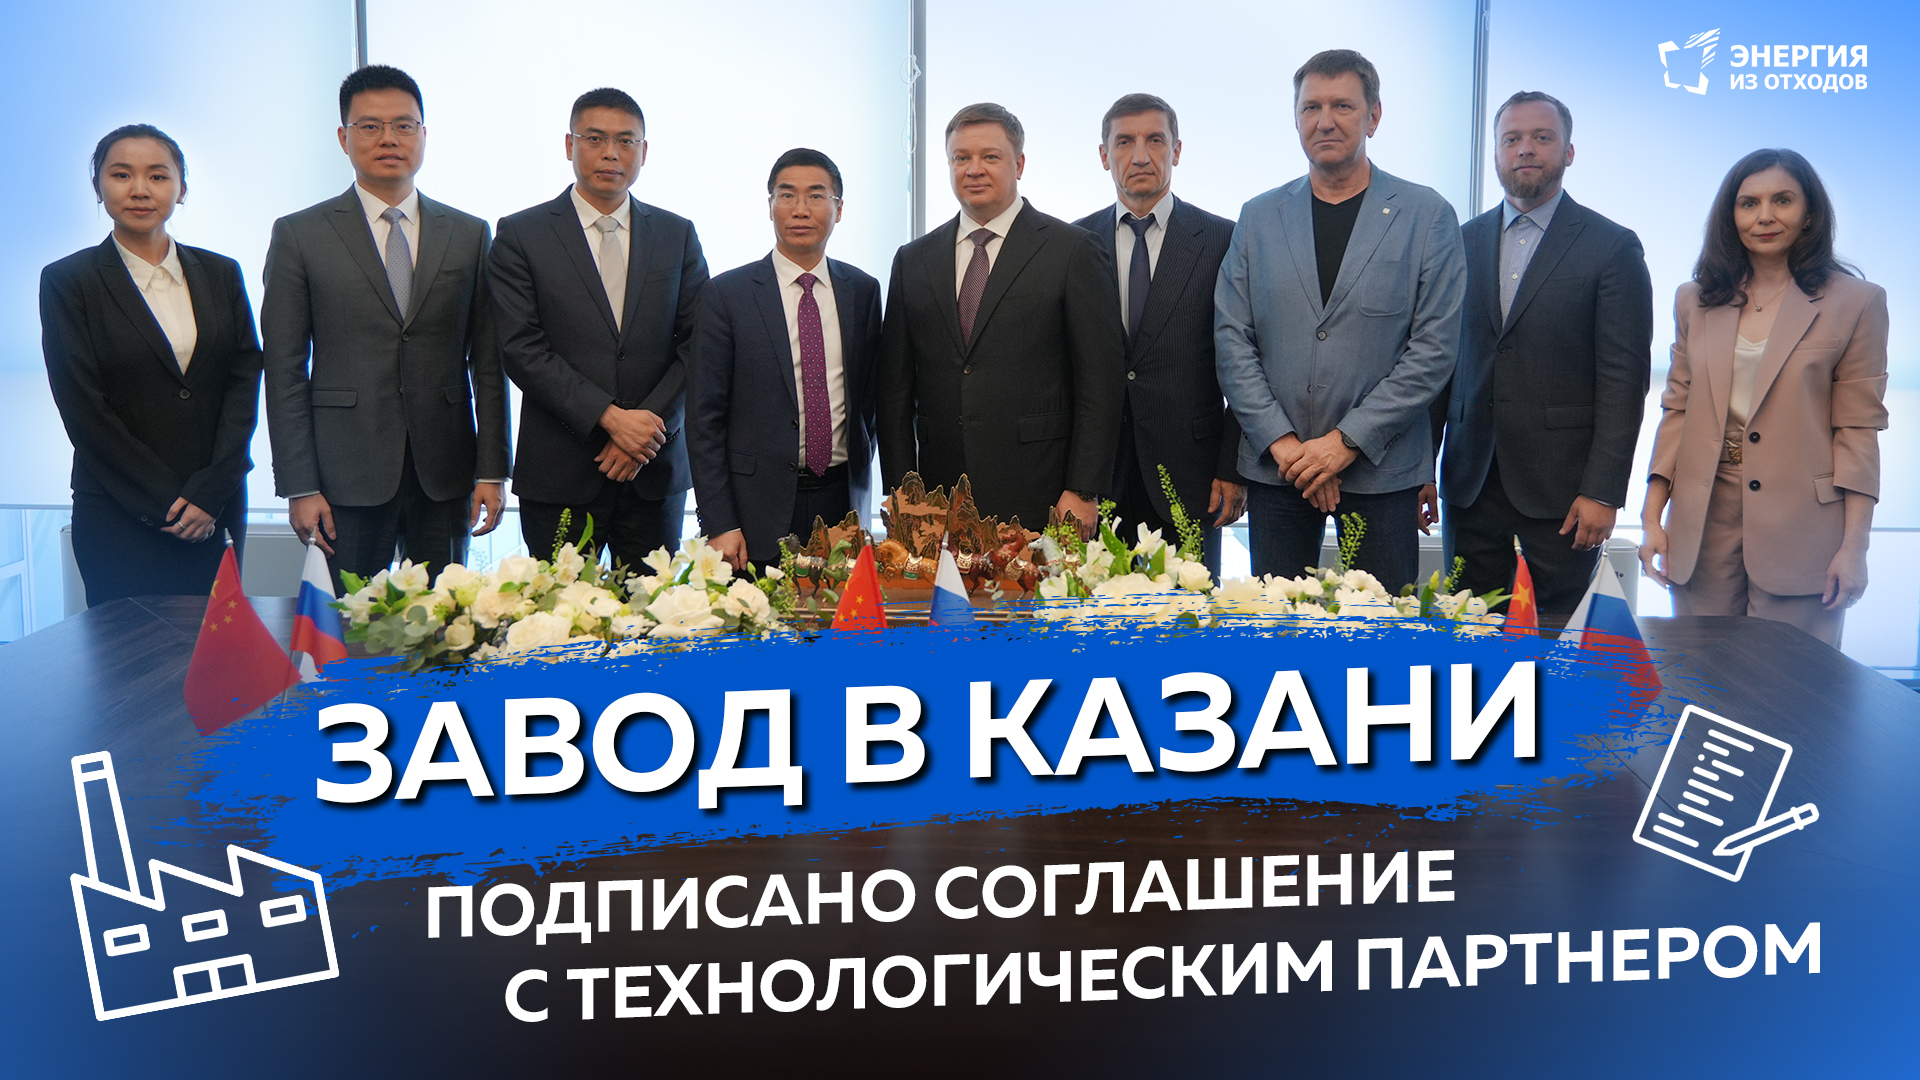 Завод в Казани: подписано соглашение с технологическим партнером